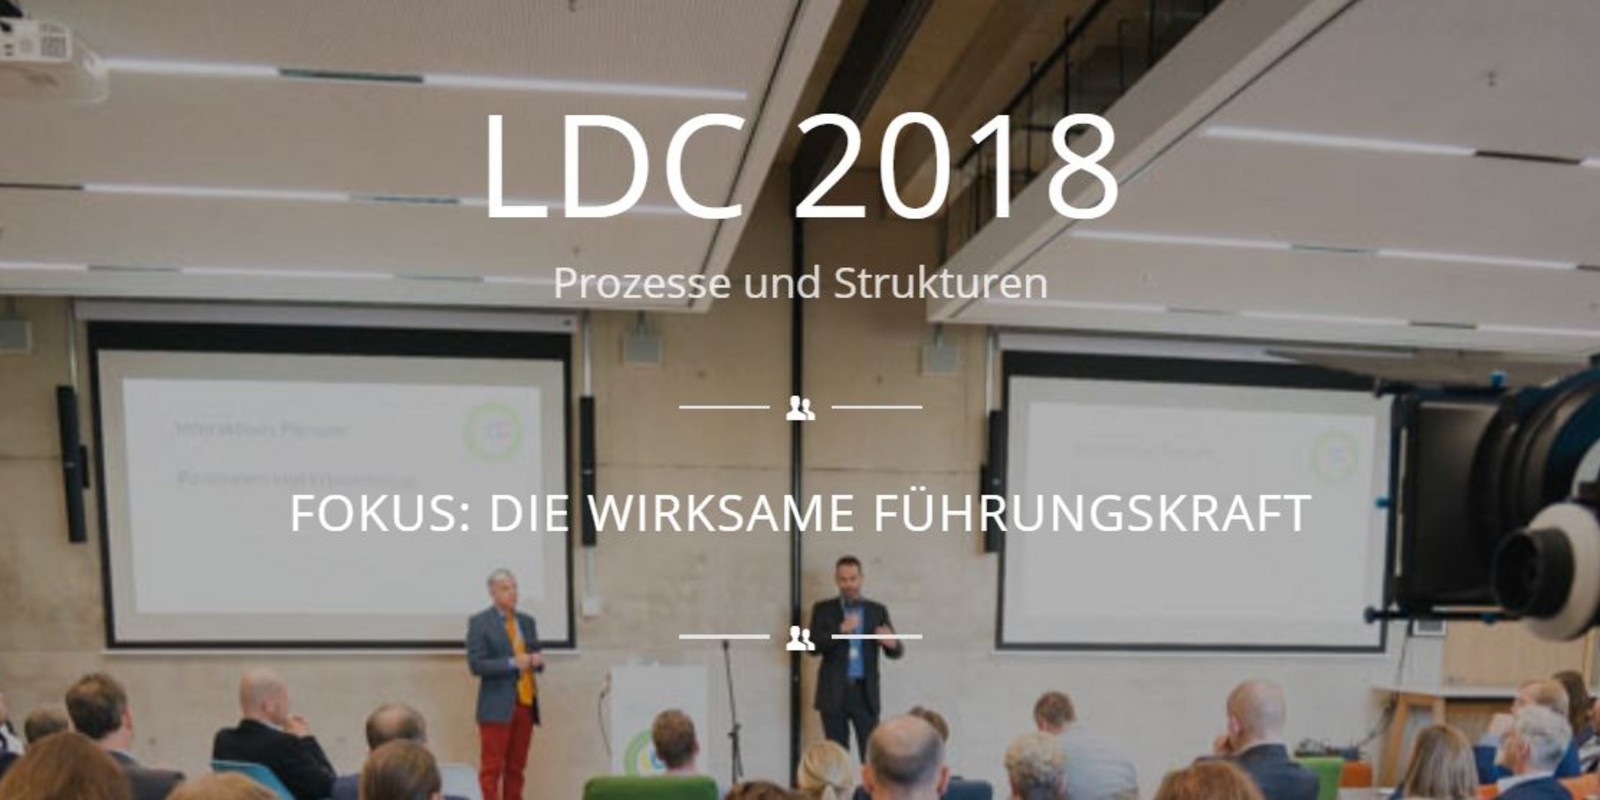 LDC 2018 pro office Bild 1